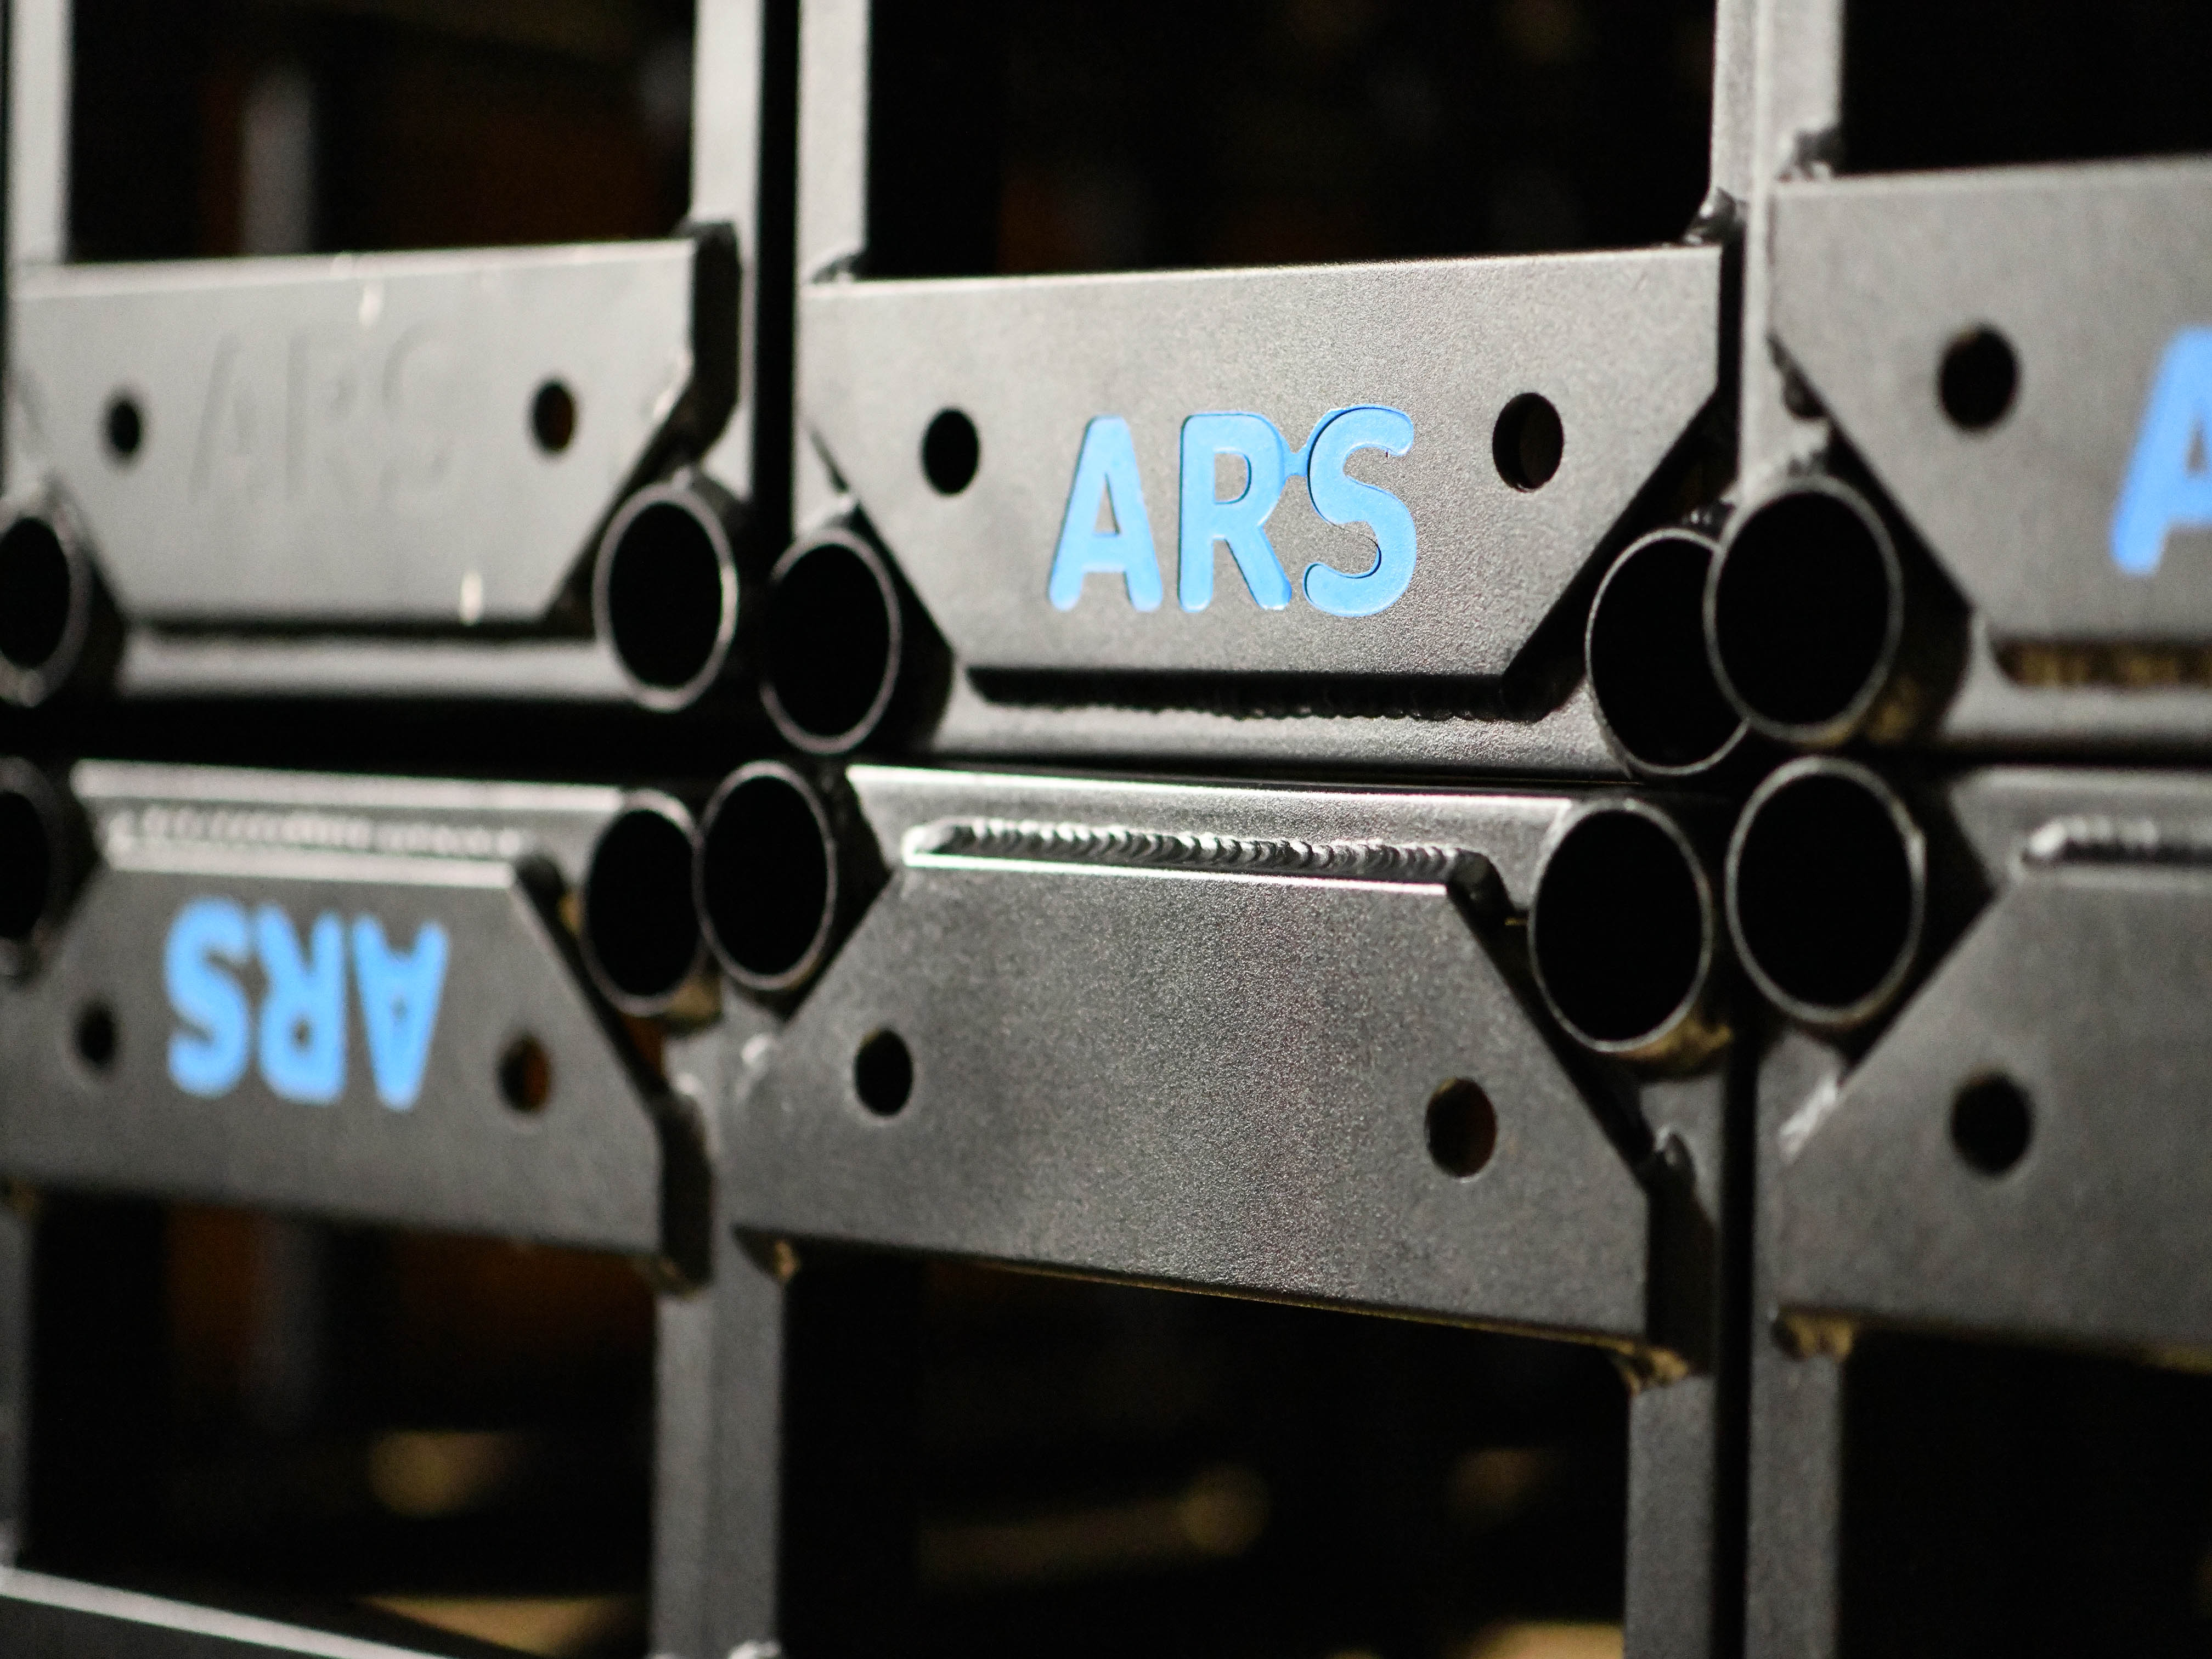 ARS Initialed Equipment